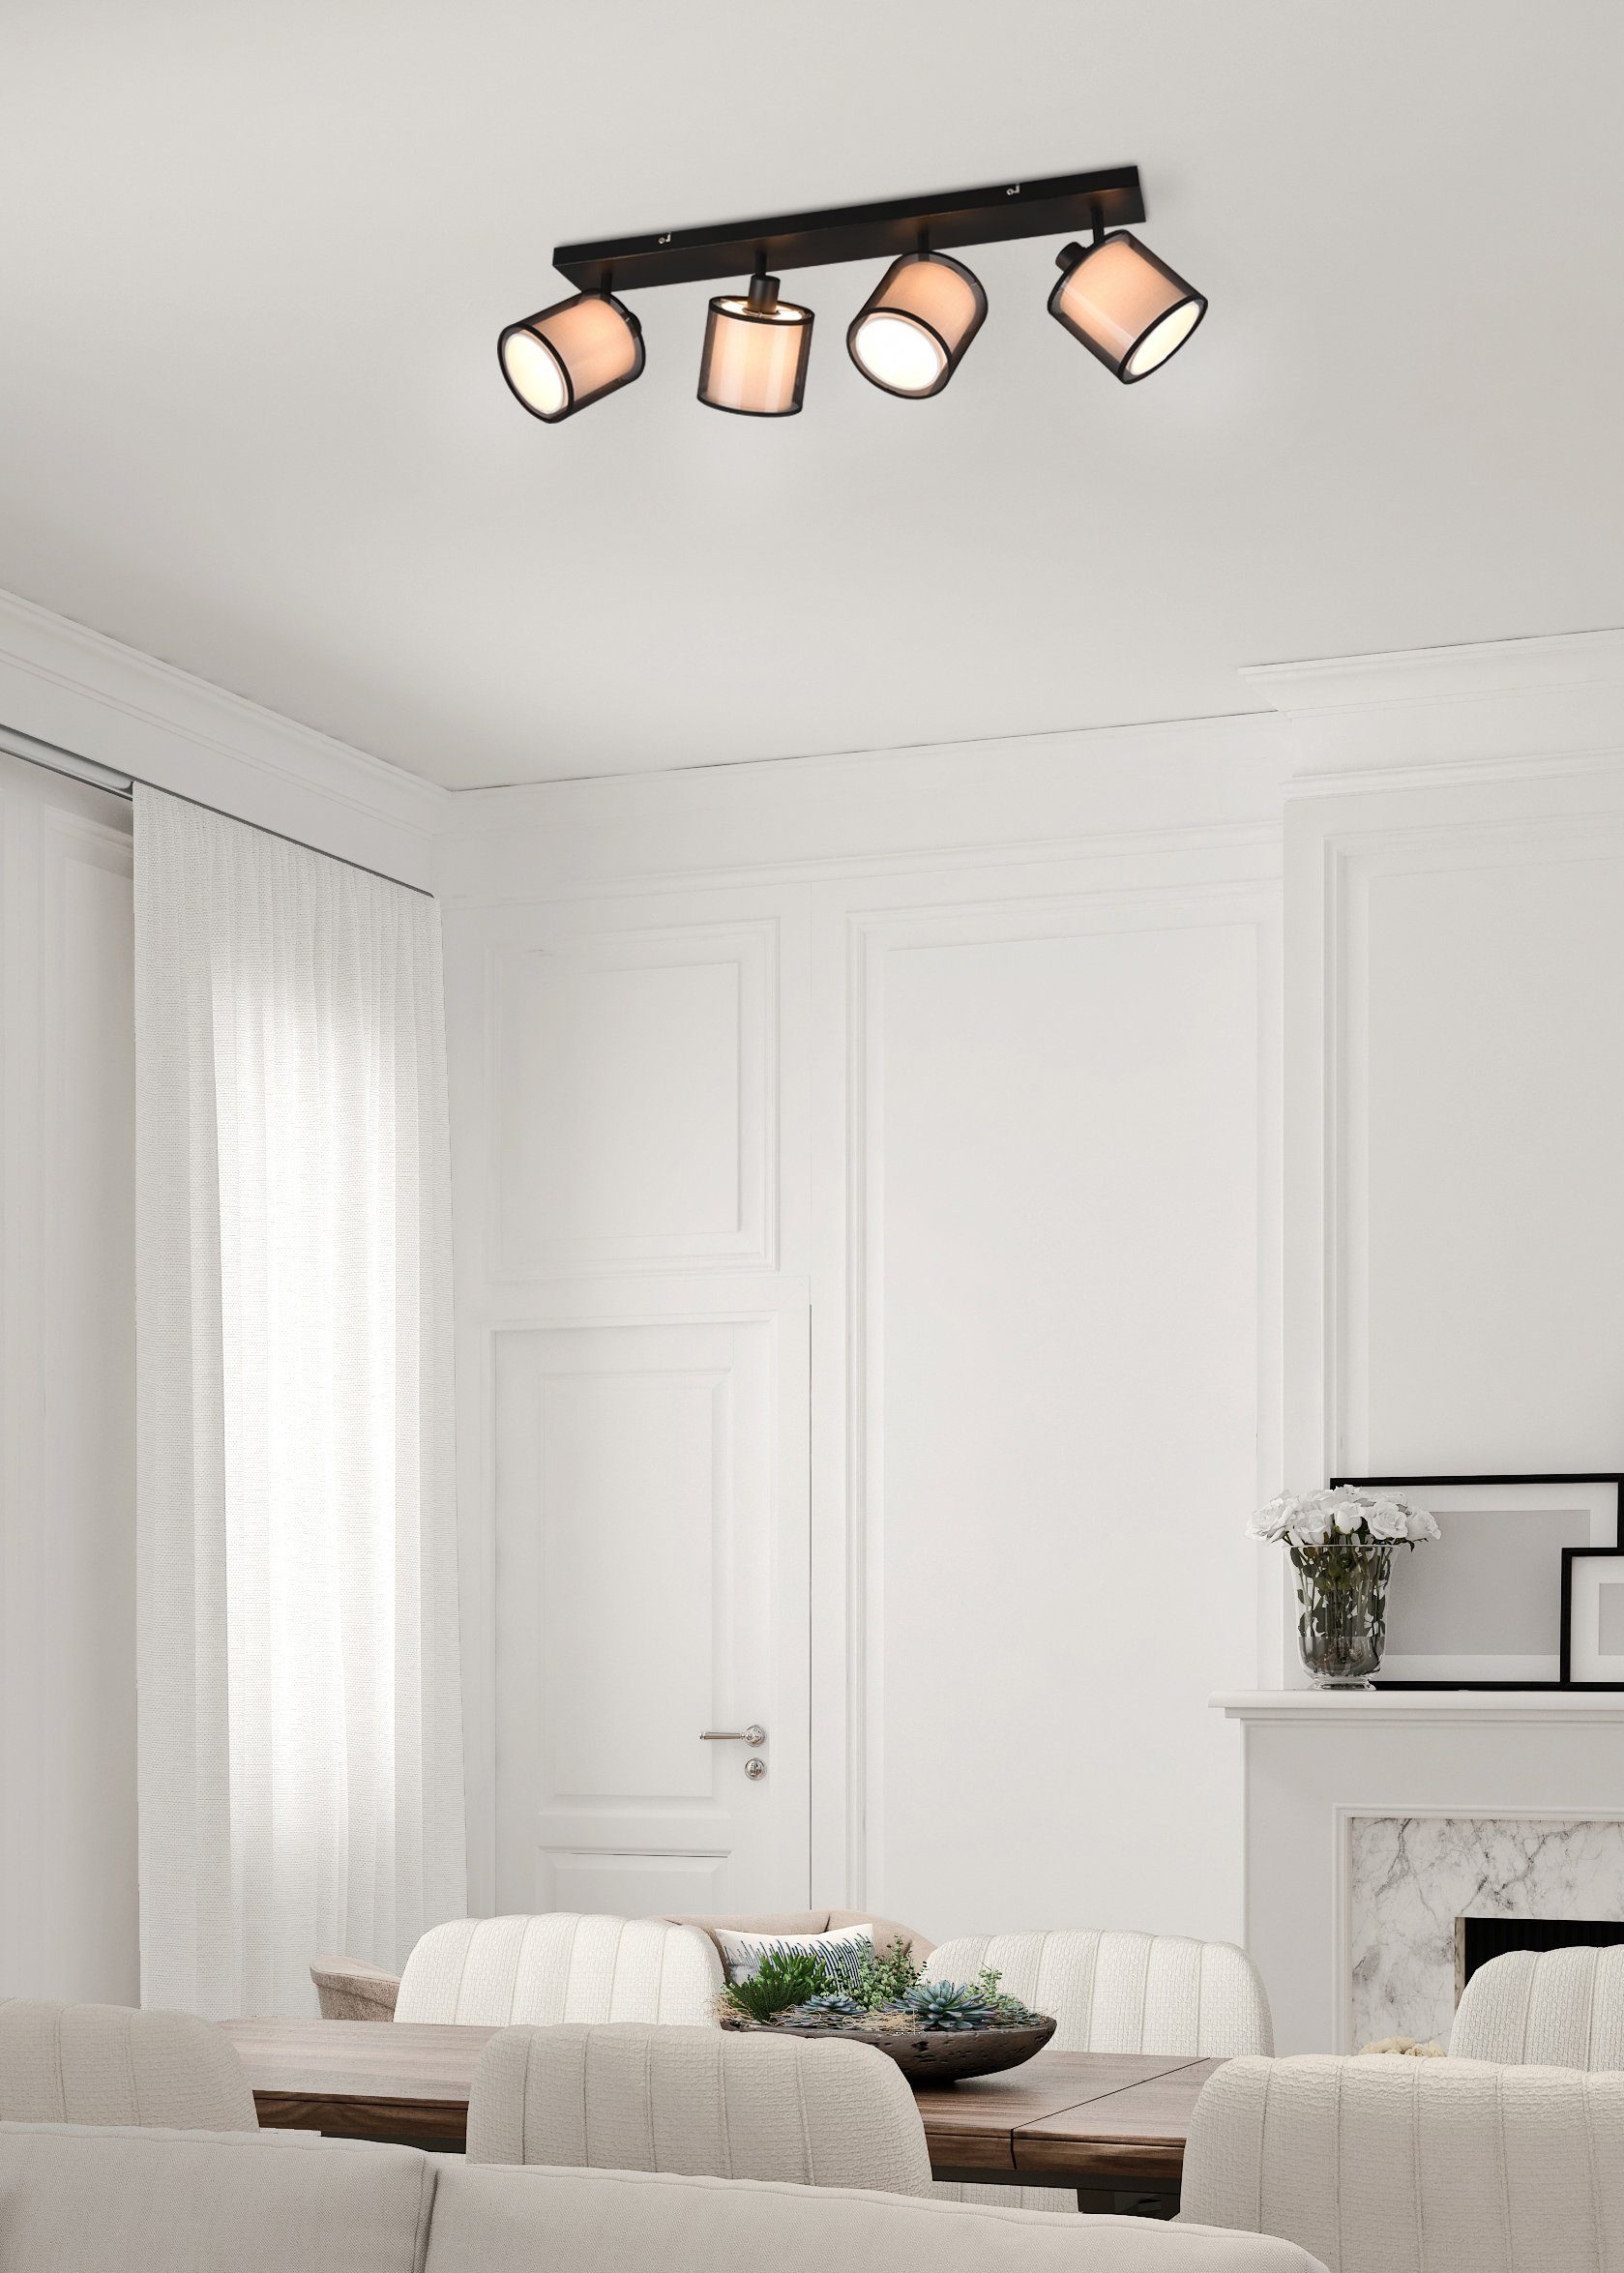 Style Places mit Doppelschirm Organza-Schirm wechselbar, 4-flammig of Leuchtmittel transparenter Textil, Spot Liotta, Deckenstrahler